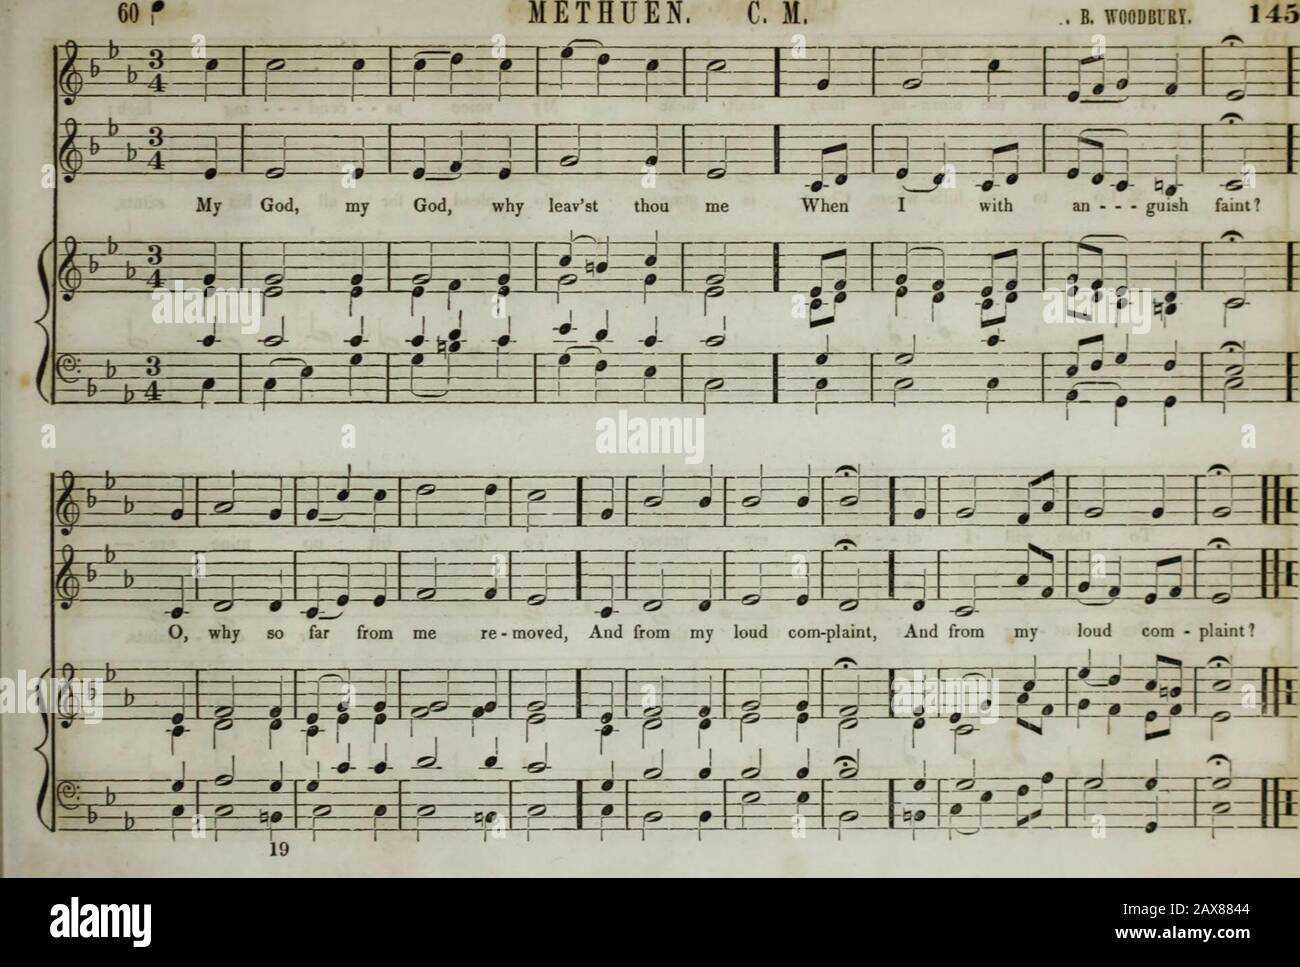 Colección de música de iglesia de la Boston Musical Education Society : compuesta por canciones originales de salmo e himno, piezas selectas, cantos, &c.; incluyendo composiciones adaptadas al servicio de la Iglesia Episcopal Protestante . 111 nil r w ftj?-. - rn -- u —- ATKIMIOLSK. 6. I. ME =E=b 35 ej z=L.-.L-(l [—L4—1 V- MITAD. TF=f |/;l ;l Ho - ? /4..b-« ±=c jriinl mi WOT da, 0 1 J gra - - cioua Lord; Ai -? - ? I t=J 1 - - copt my hr4—j= :=t=i praj M rer; tr=4 i-;- l Fi fr RT rlr 1 r -p r A «) +  1- ? * 1 M ii - - - solitario = £ • mi 1 J., I.J.I j , 1 J Kinij, mv Dios, WU I para ayuda RE ? - par III i k Foto de stock